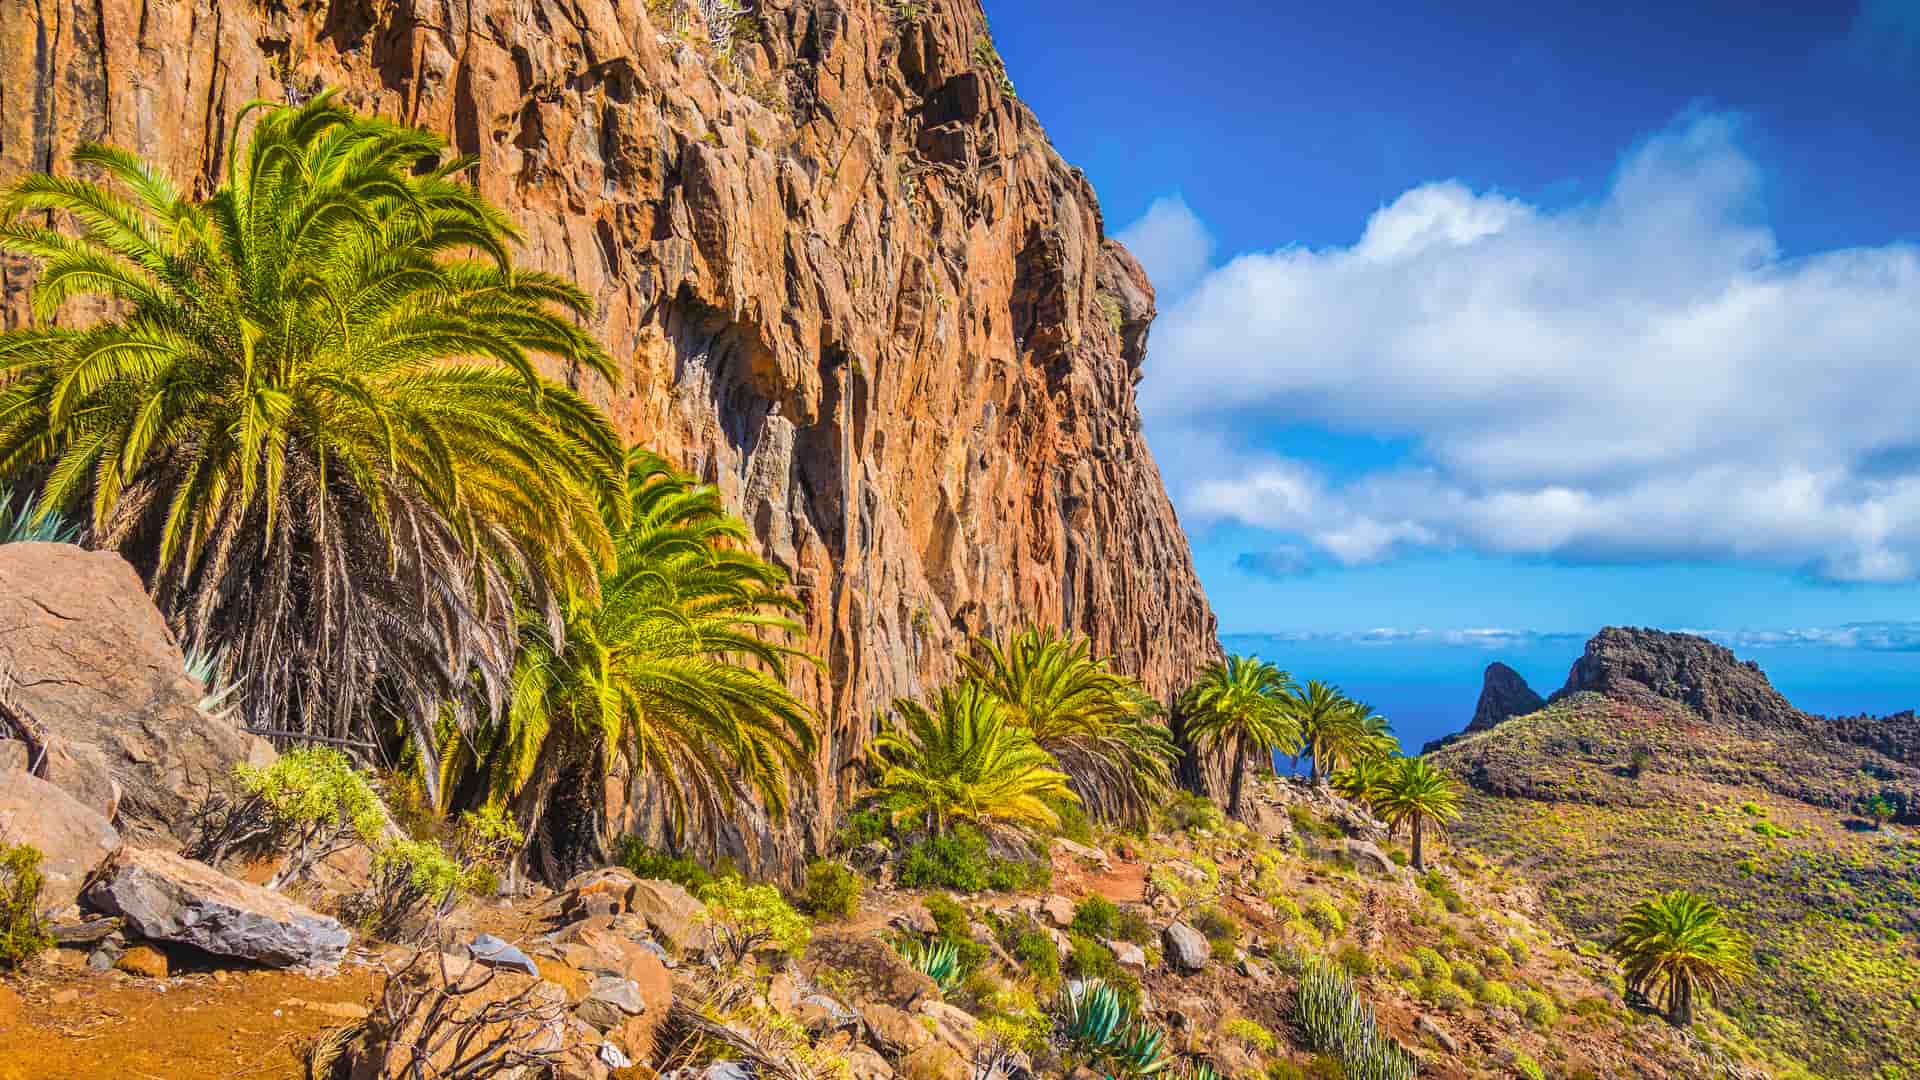 Increíble paisaje volcánico en Las palmas, Islas Canarias donde están disponibles los servicios telefónicos de yoigo